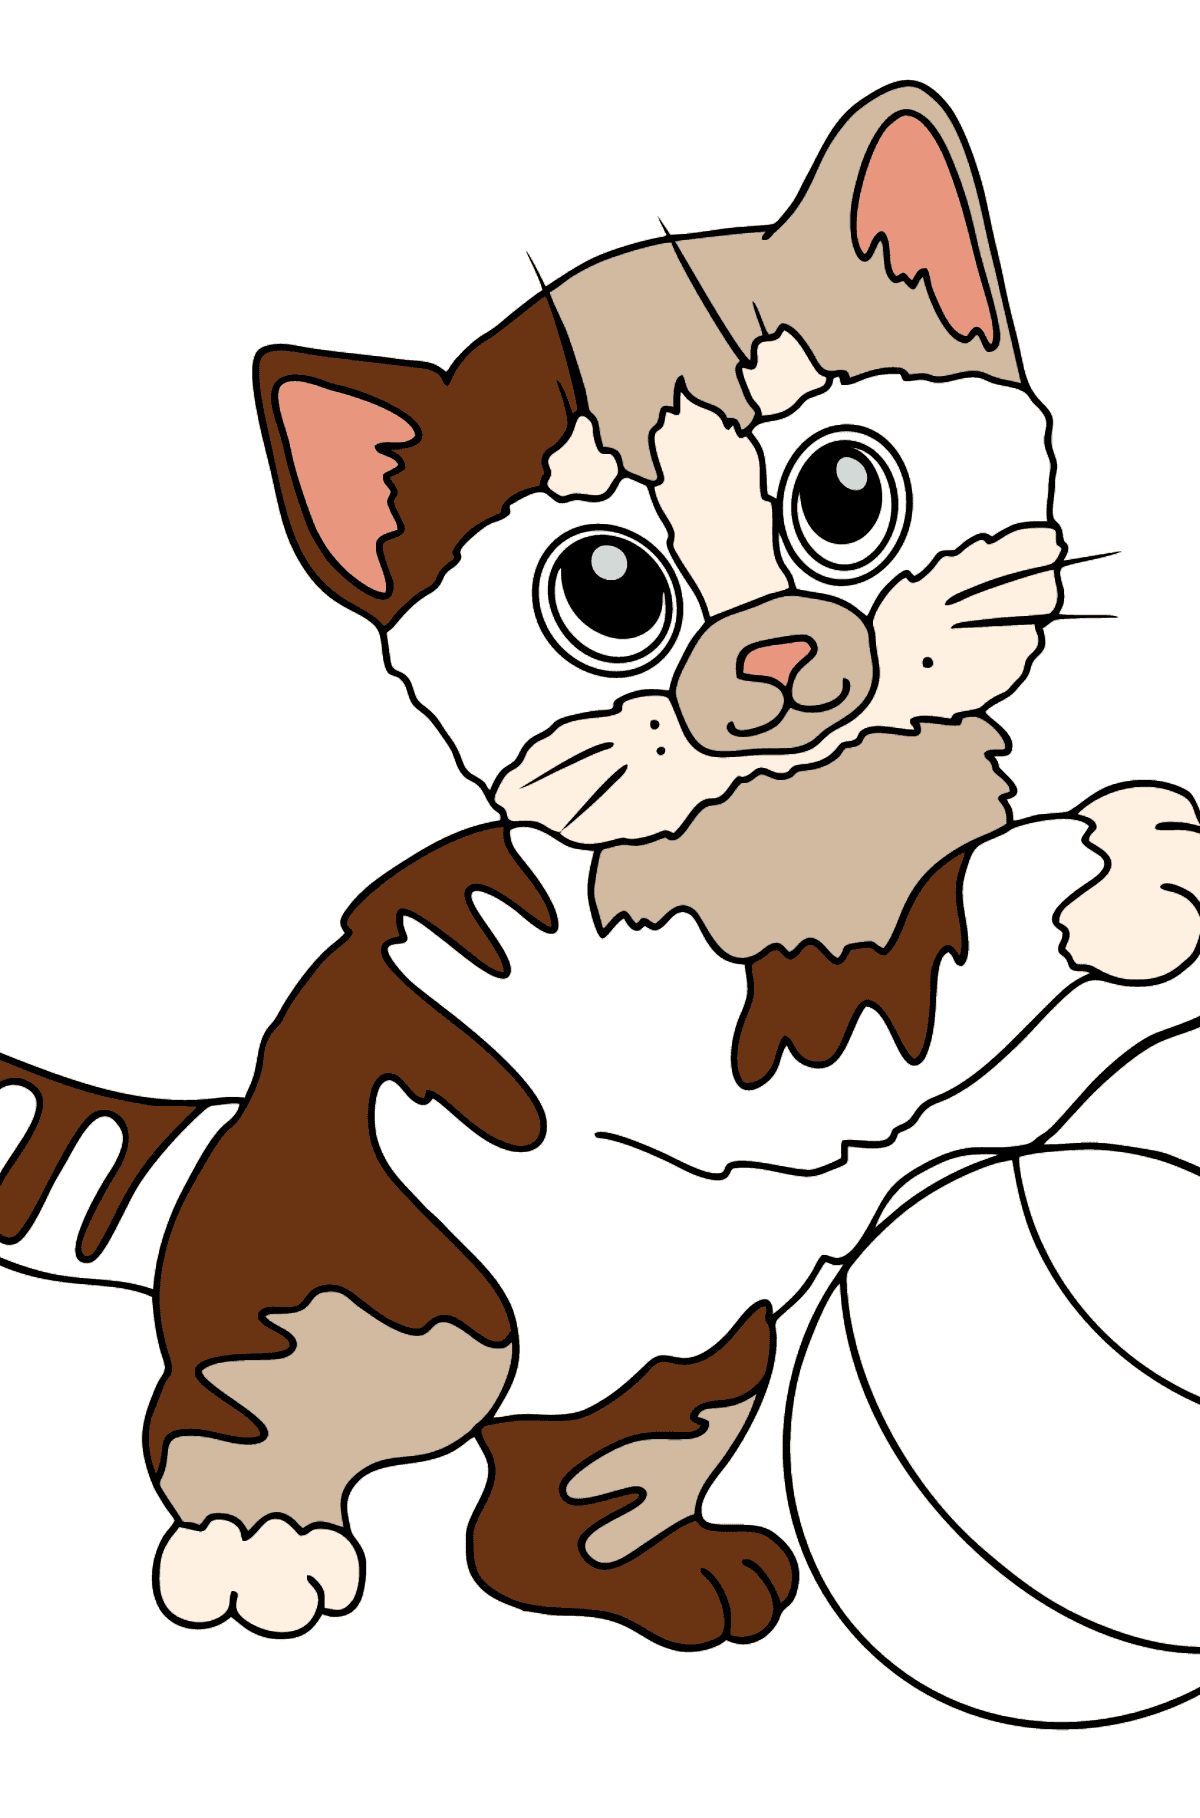 Desenho para colorir de gatinho alegre - Imagens para Colorir para Crianças